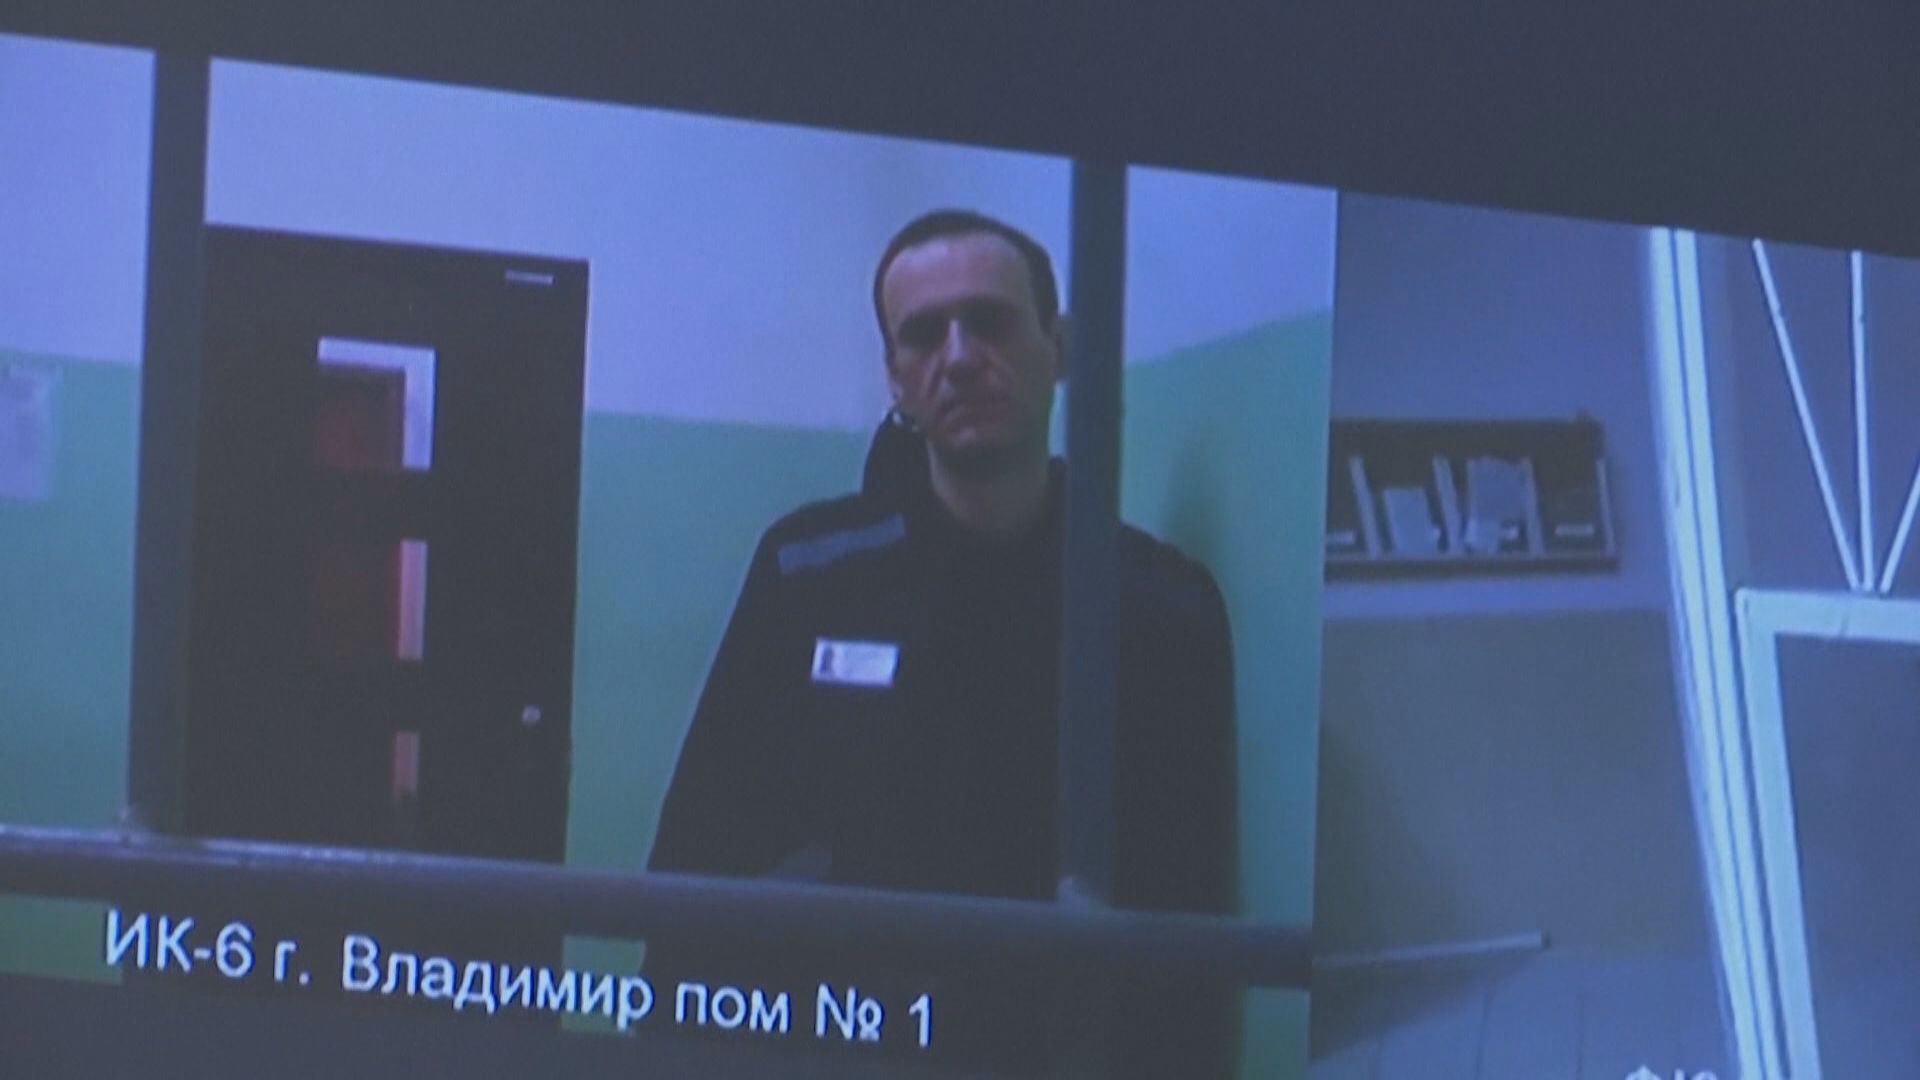 俄羅斯法院駁回納瓦爾尼極端主義罪上訴